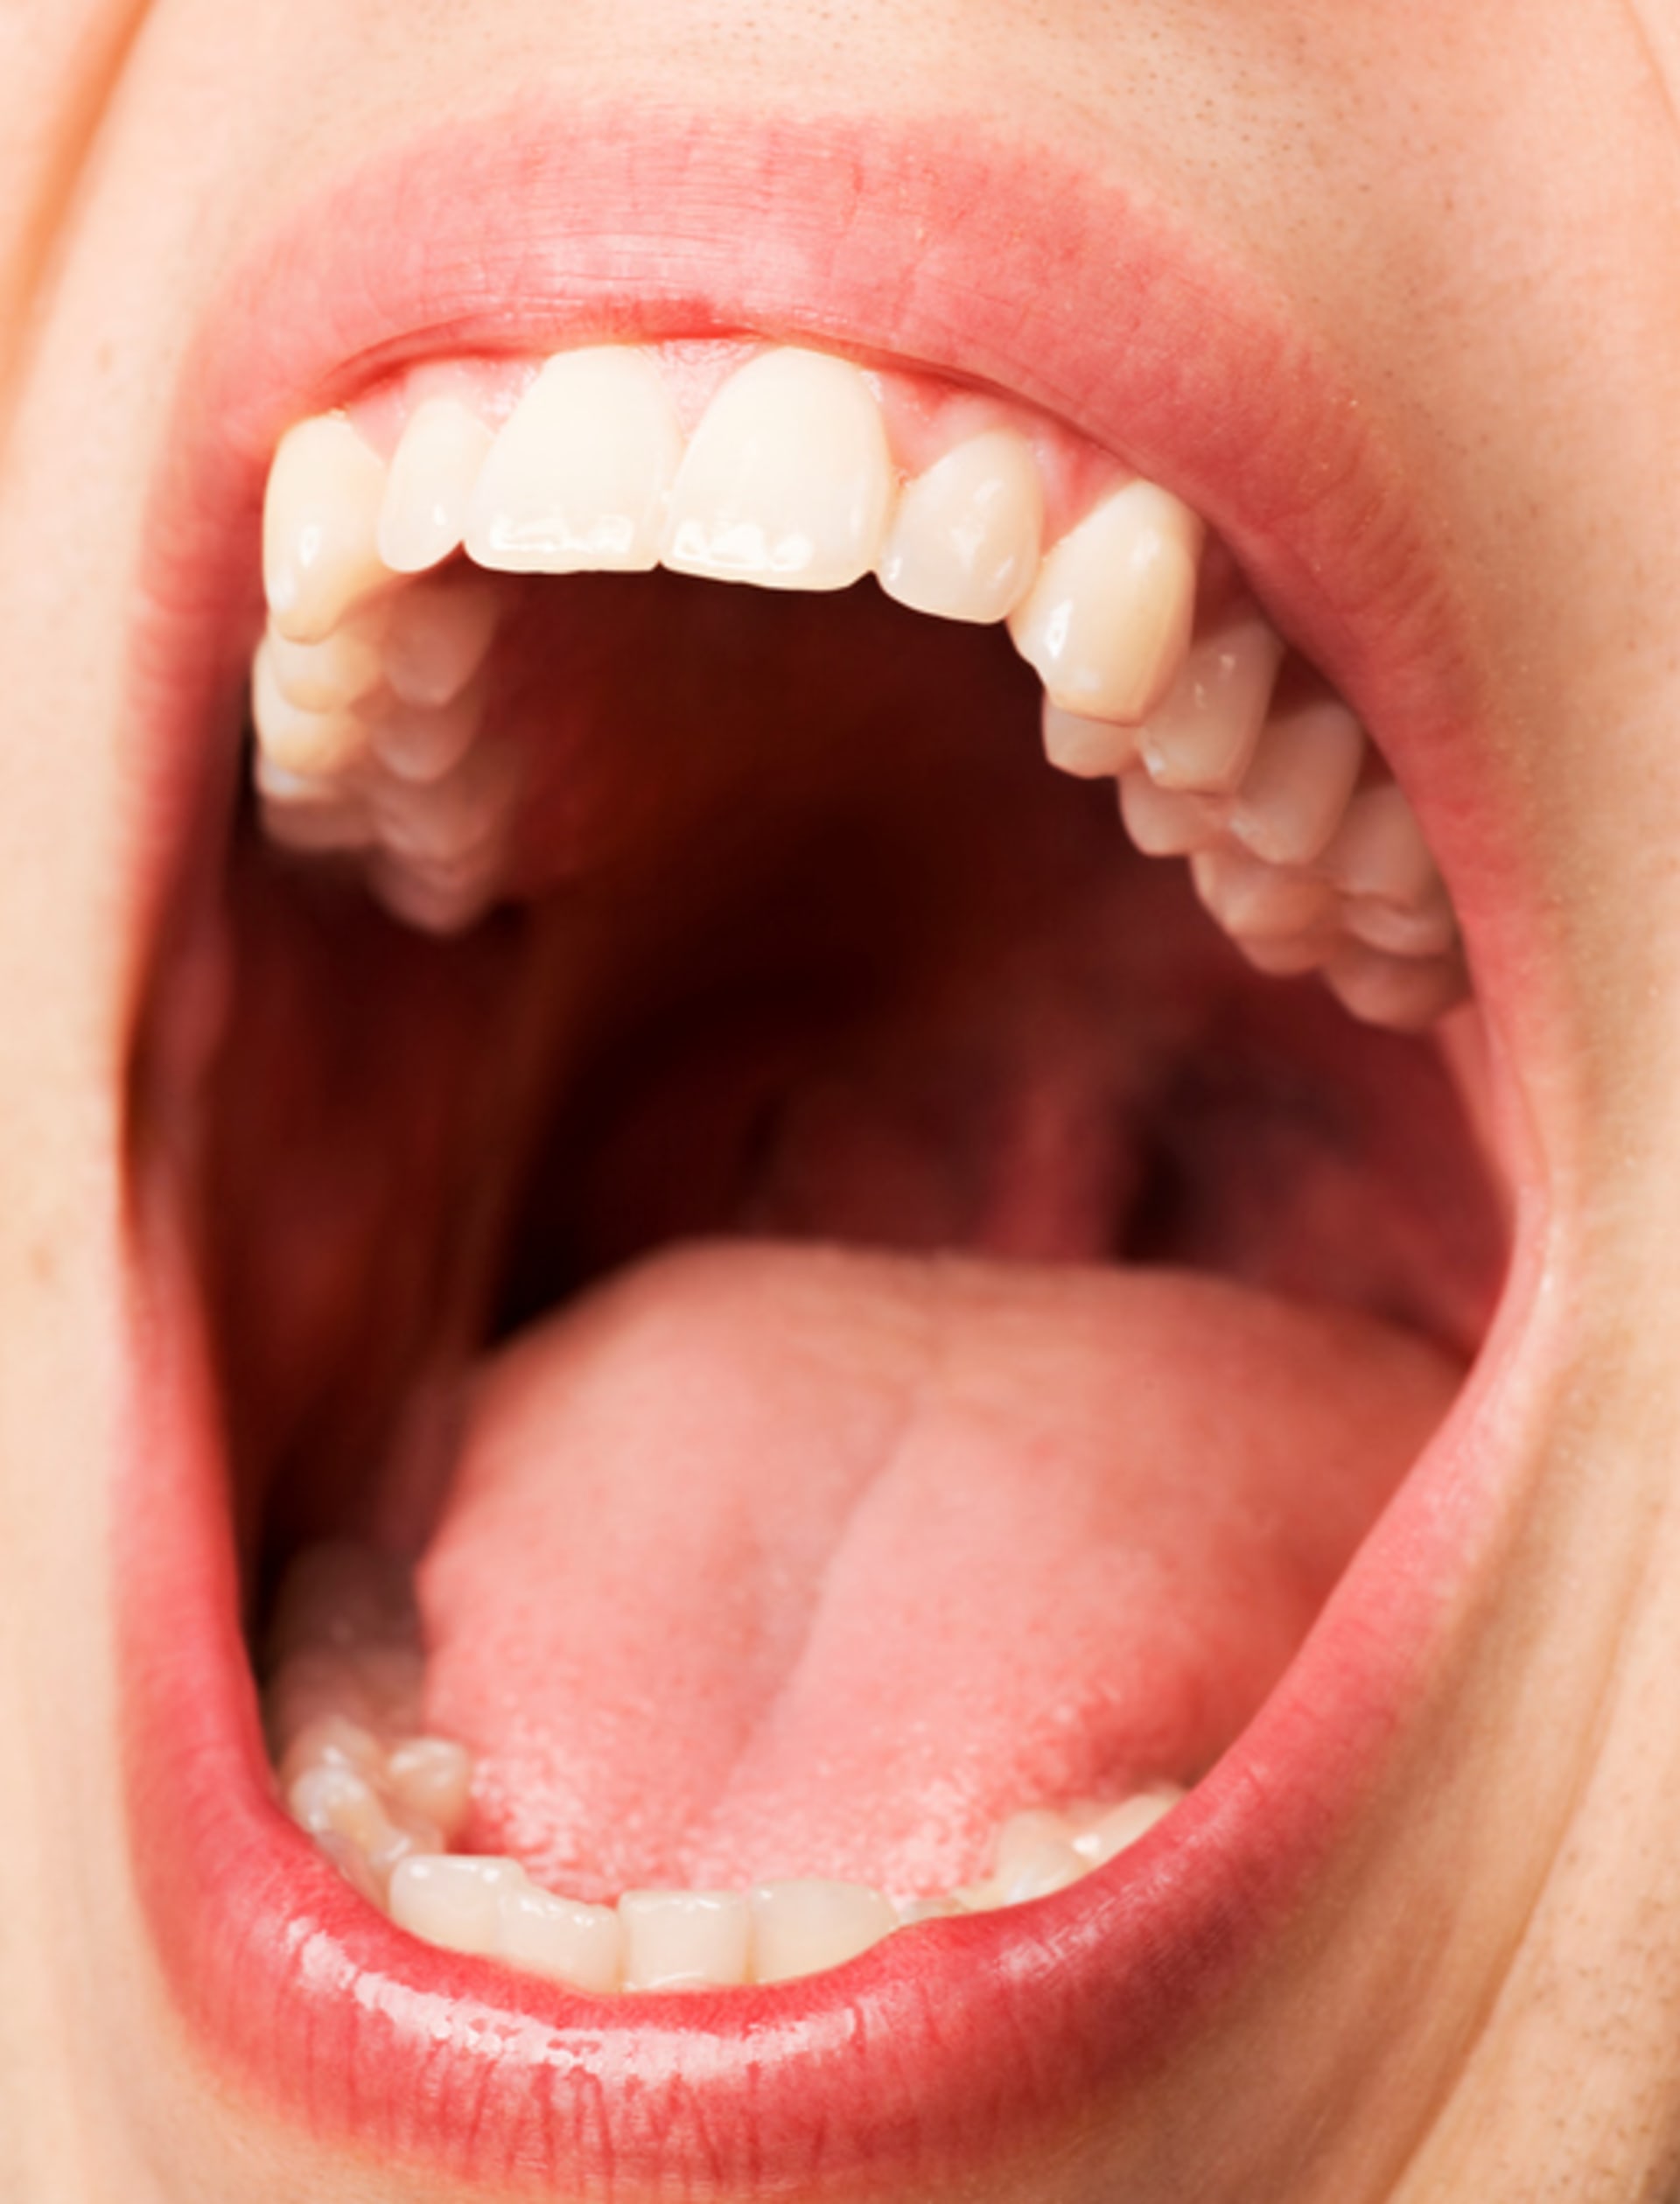 Pozor na těchto 12 symbolů ve vašich snech zuby